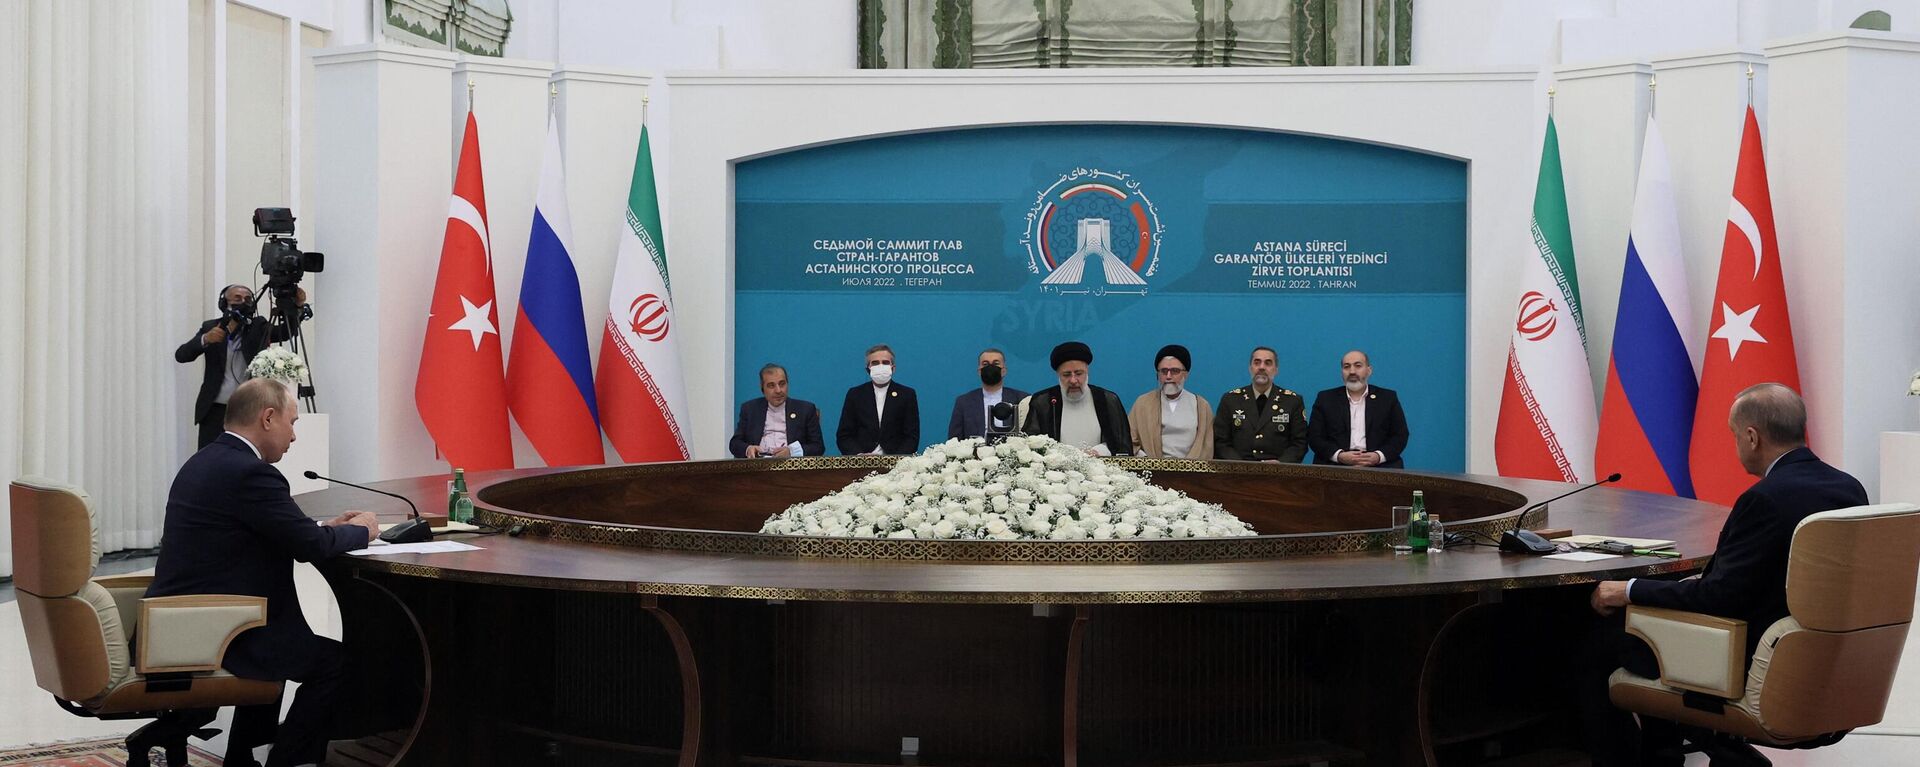 La cumbre entre Rusia, Irán y Turquía, celebrada en Teherán el 19 de julio de 2022 - Sputnik Mundo, 1920, 23.07.2022